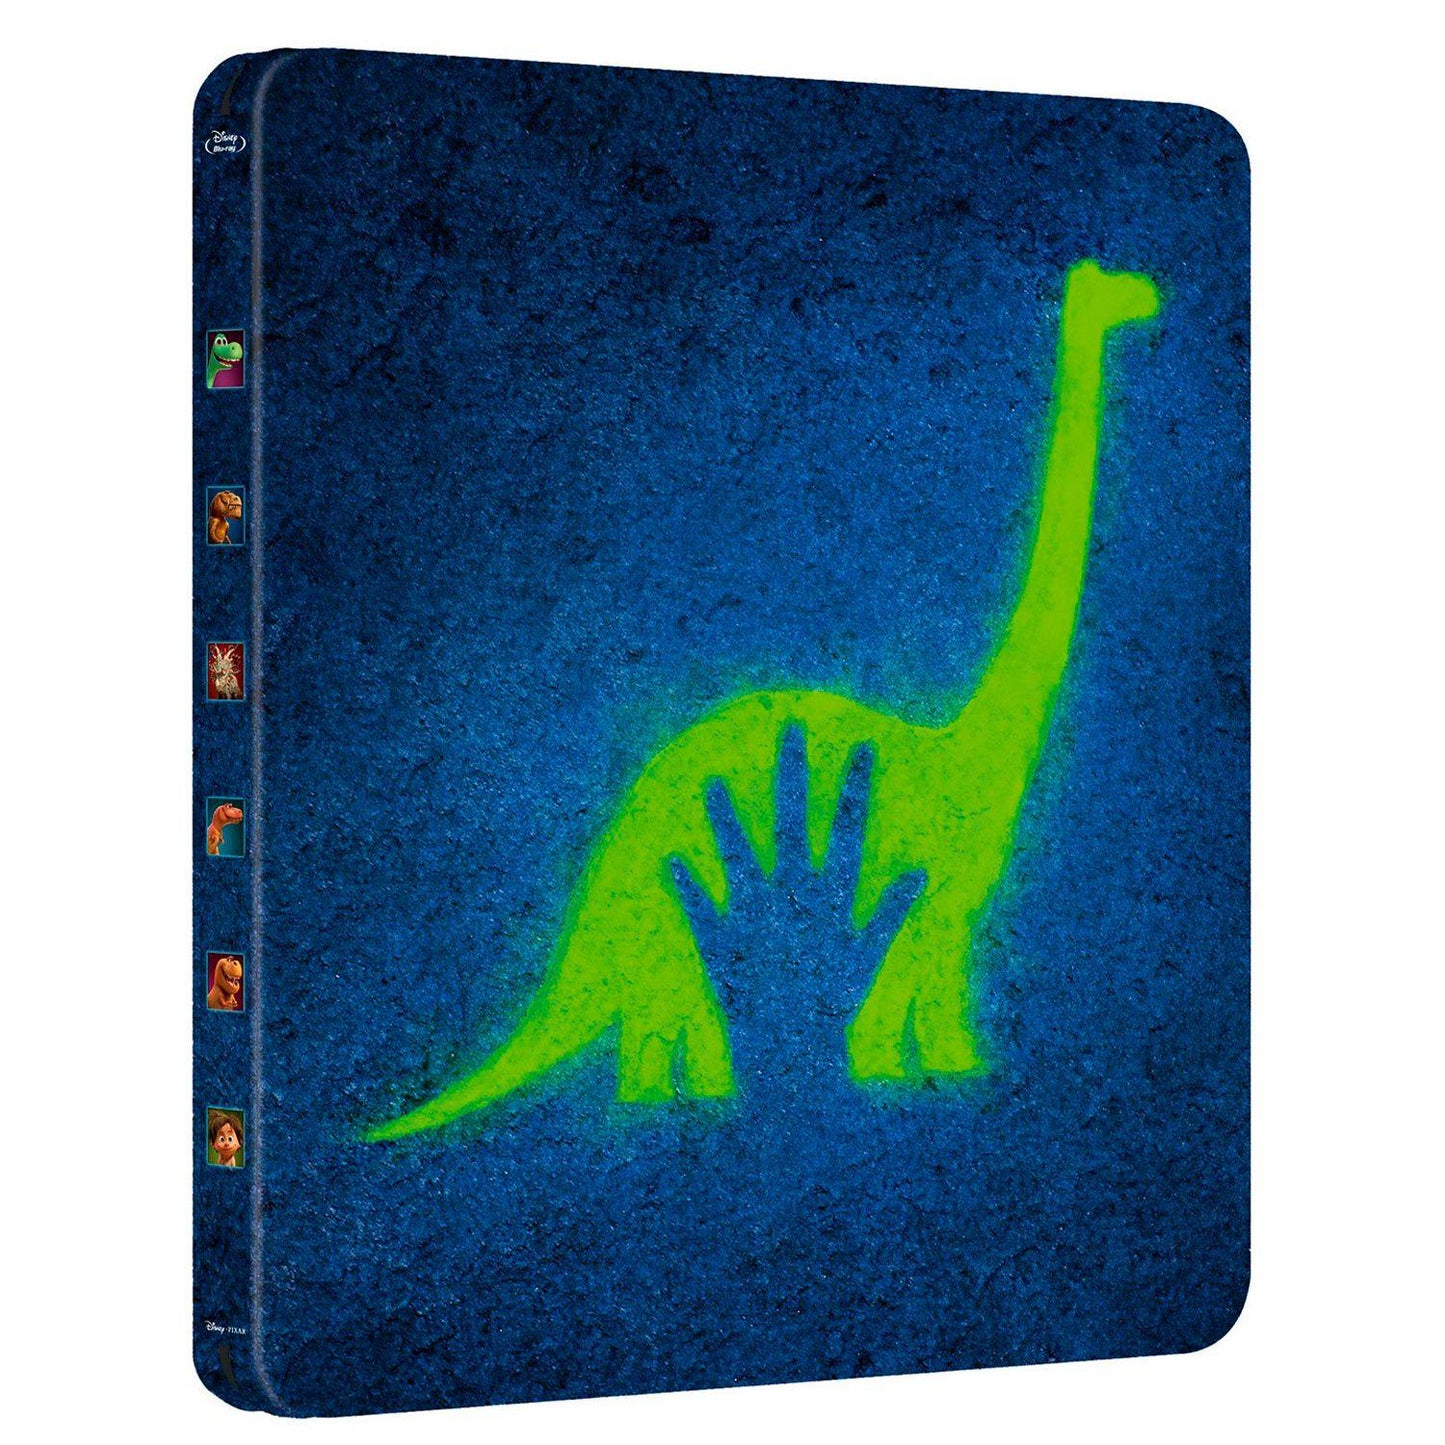 Хороший динозавр (Blu-ray) Steelbook